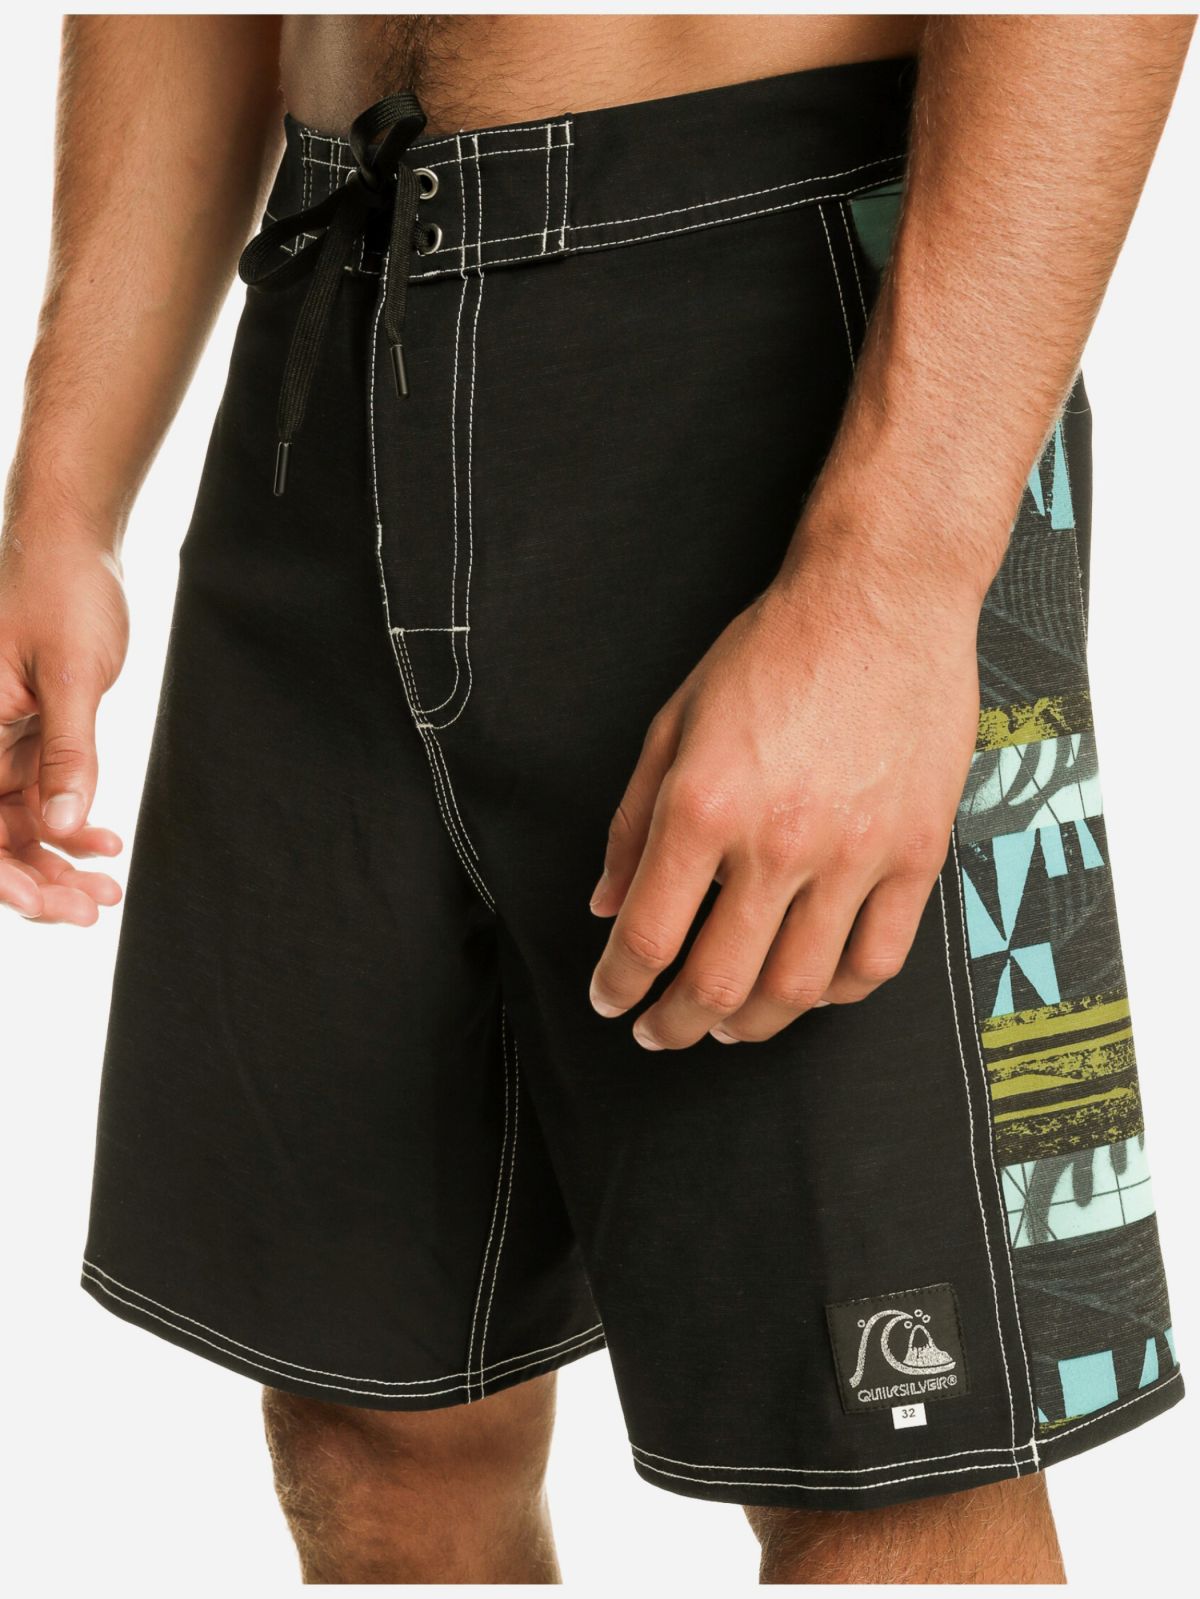  מכנסי בורדשורטס עם פאנלים בהדפס של QUIKSILVER